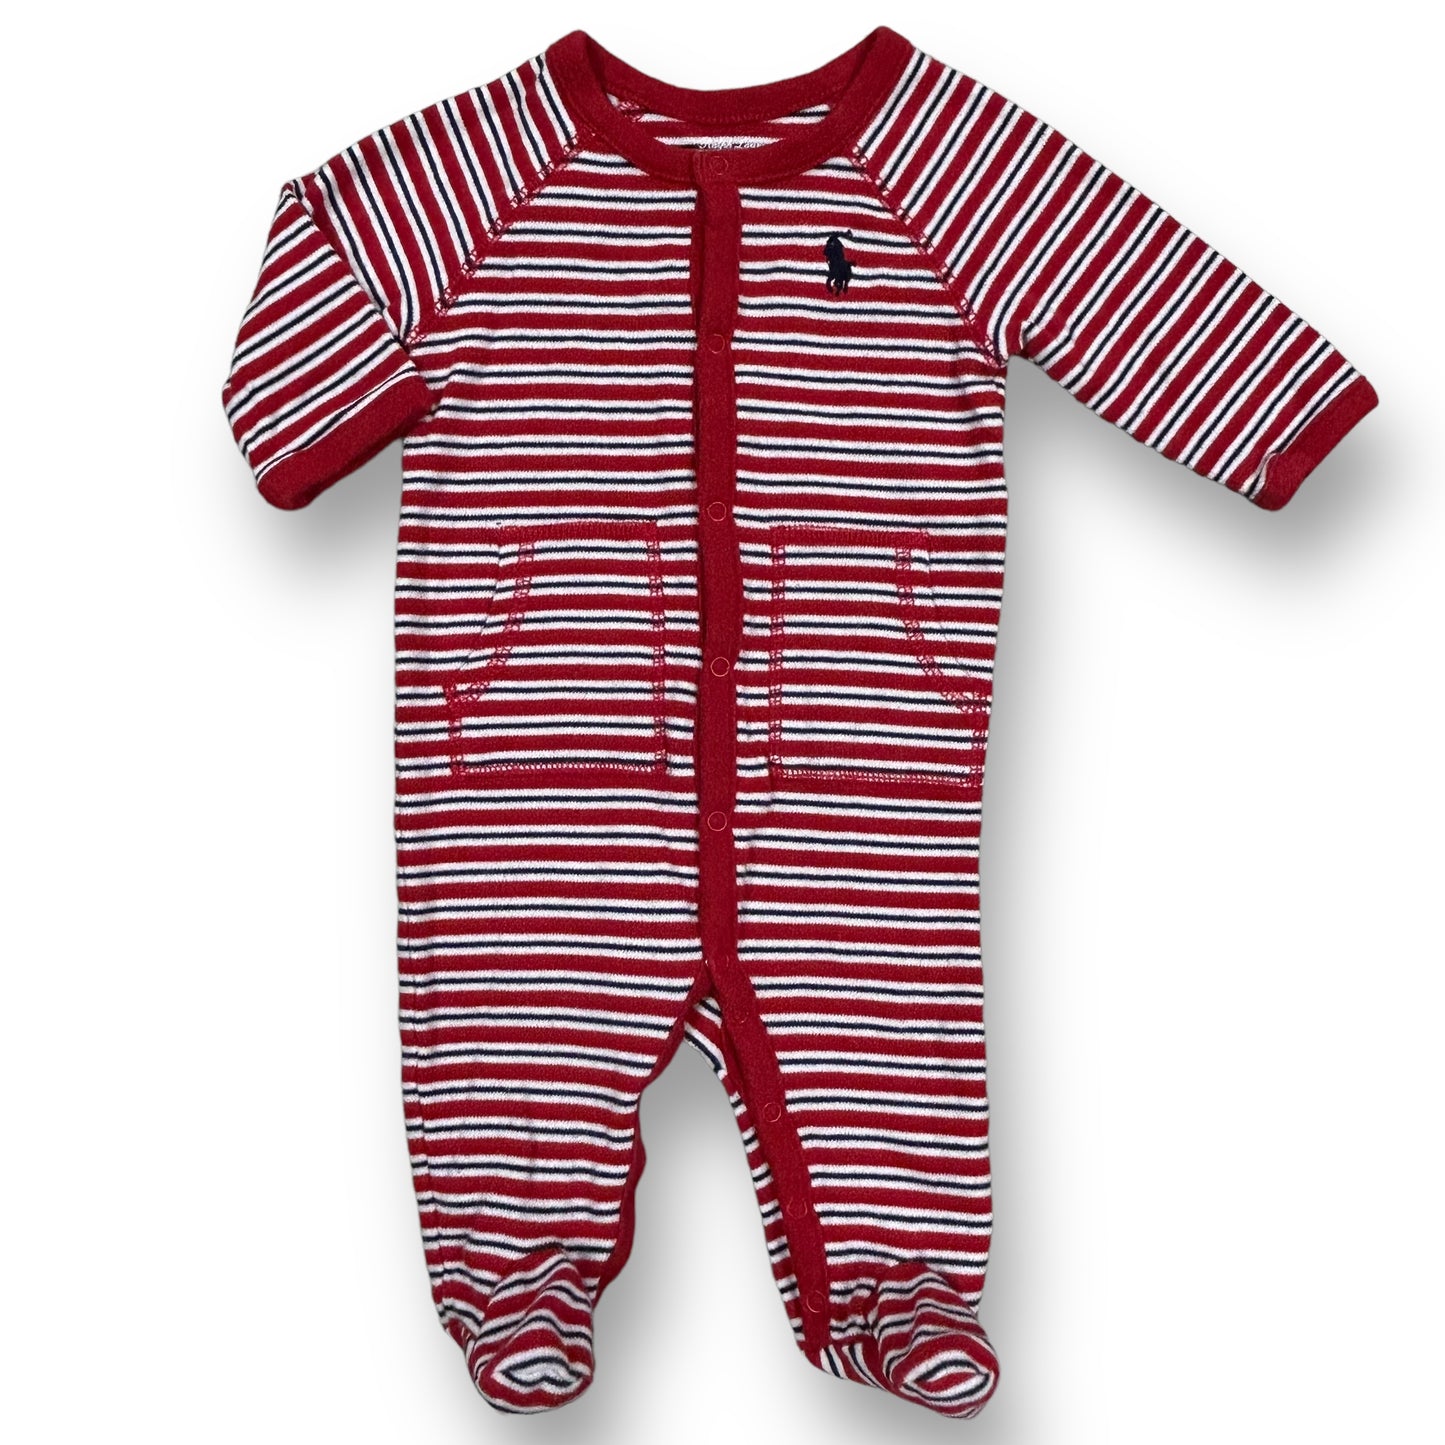 Boys Ralph Lauren Size 3 Months Red White Blue Striped Footie One-Piece